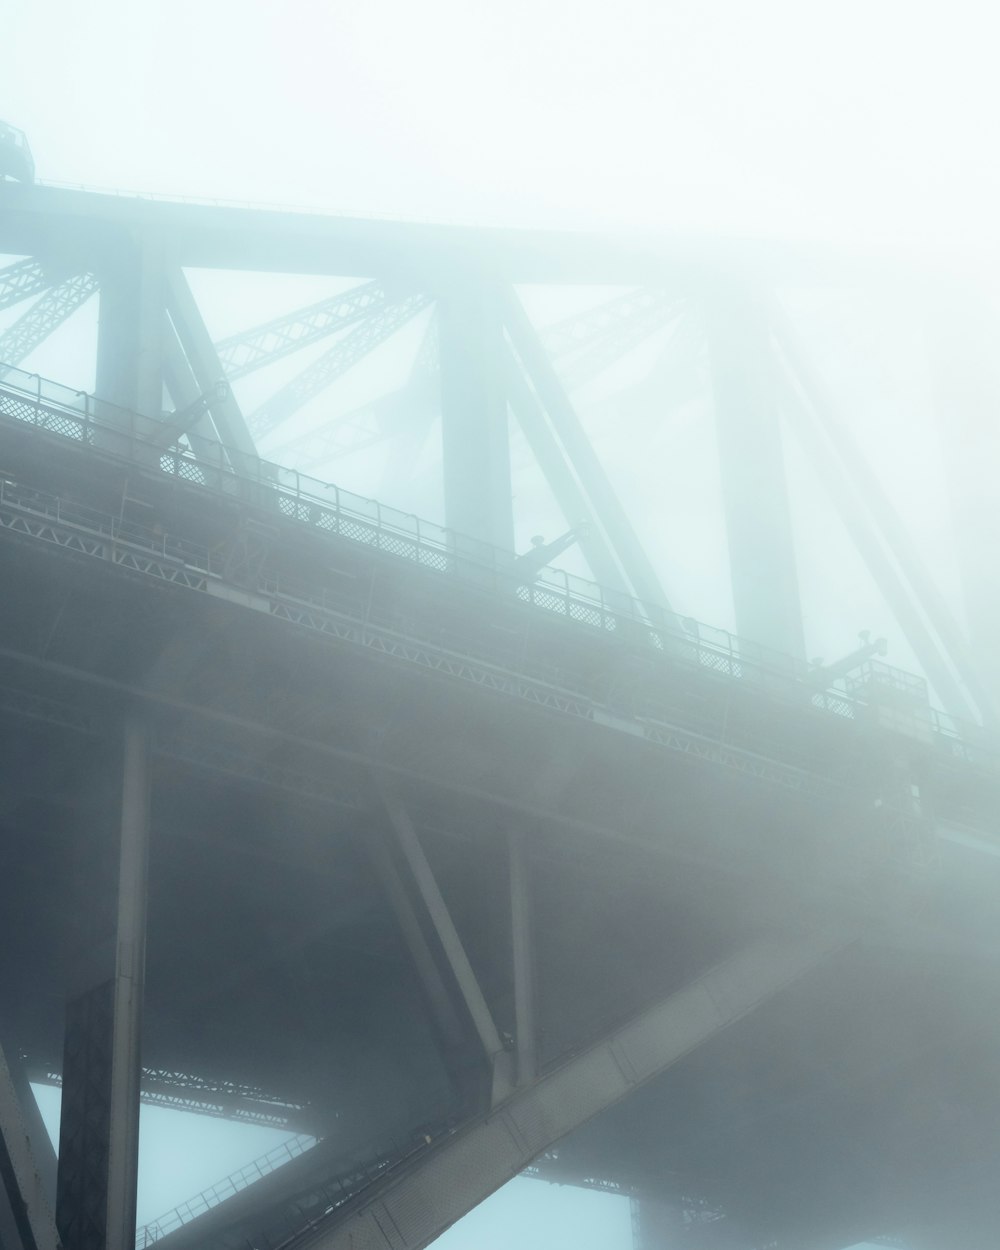 Graustufenfoto einer Brücke